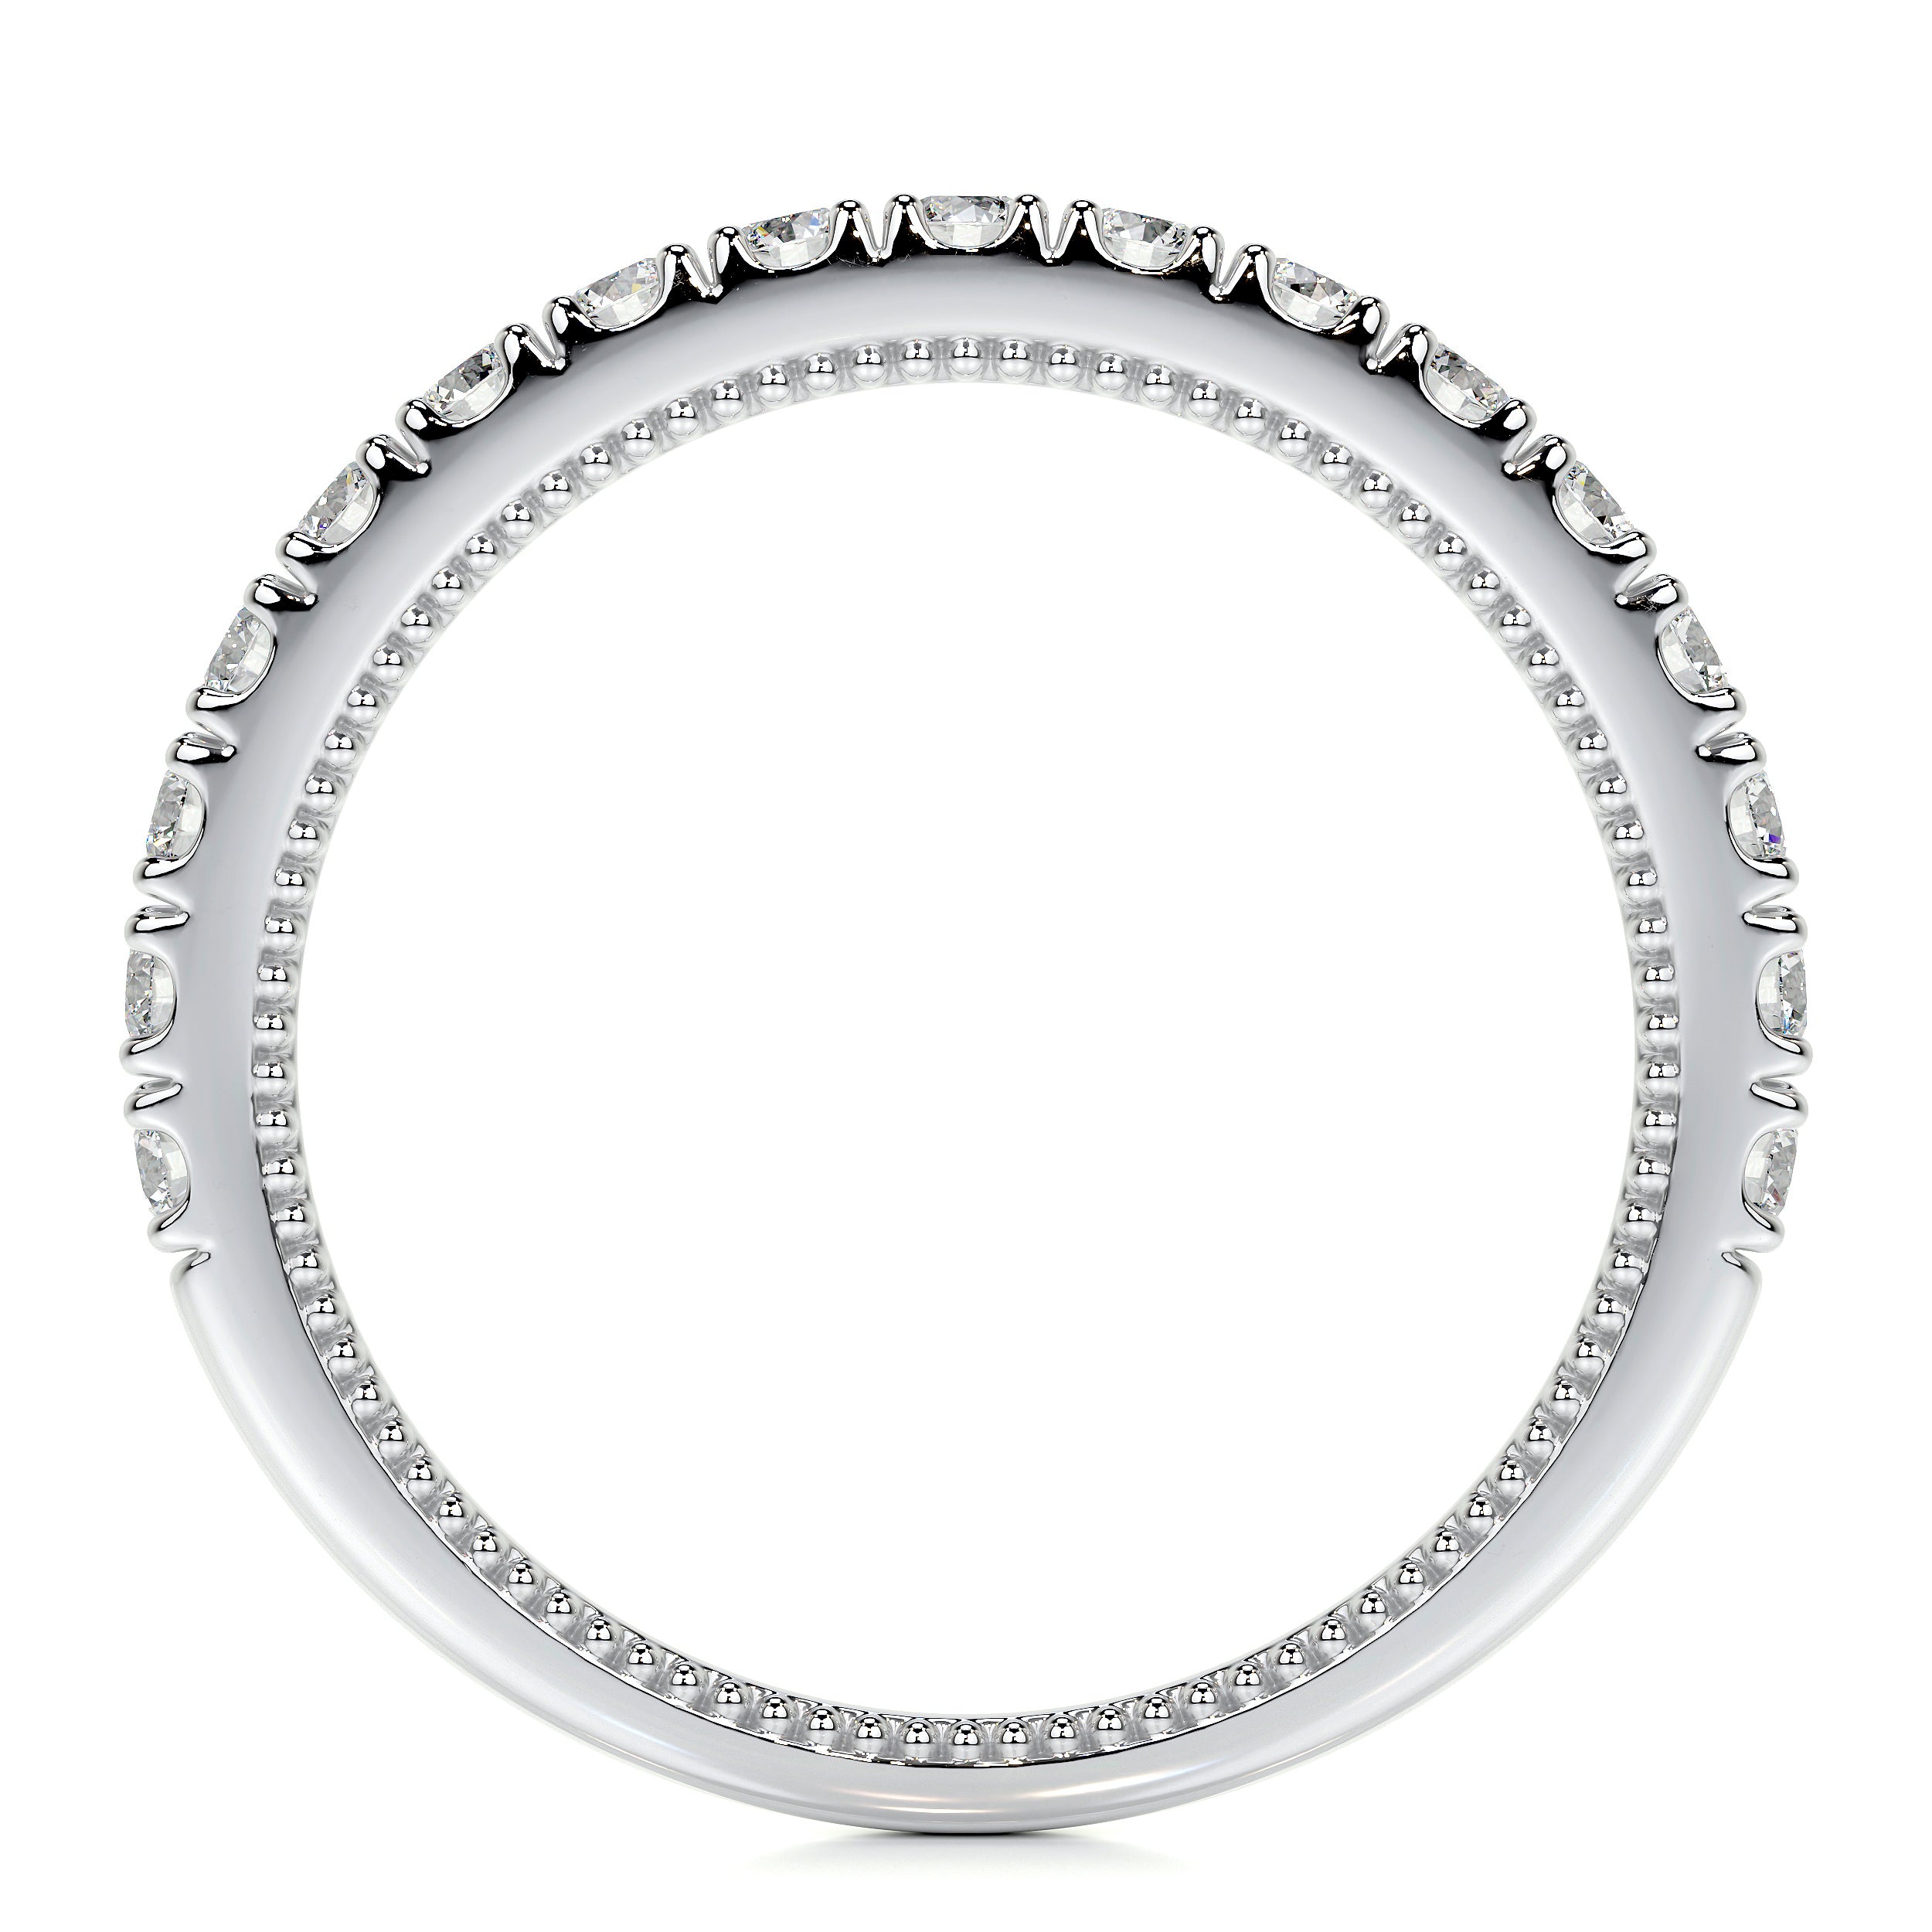 Blair Lab Grown Diamond Milgrain Wedding Ring   (0.5 Carat) -14K White Gold